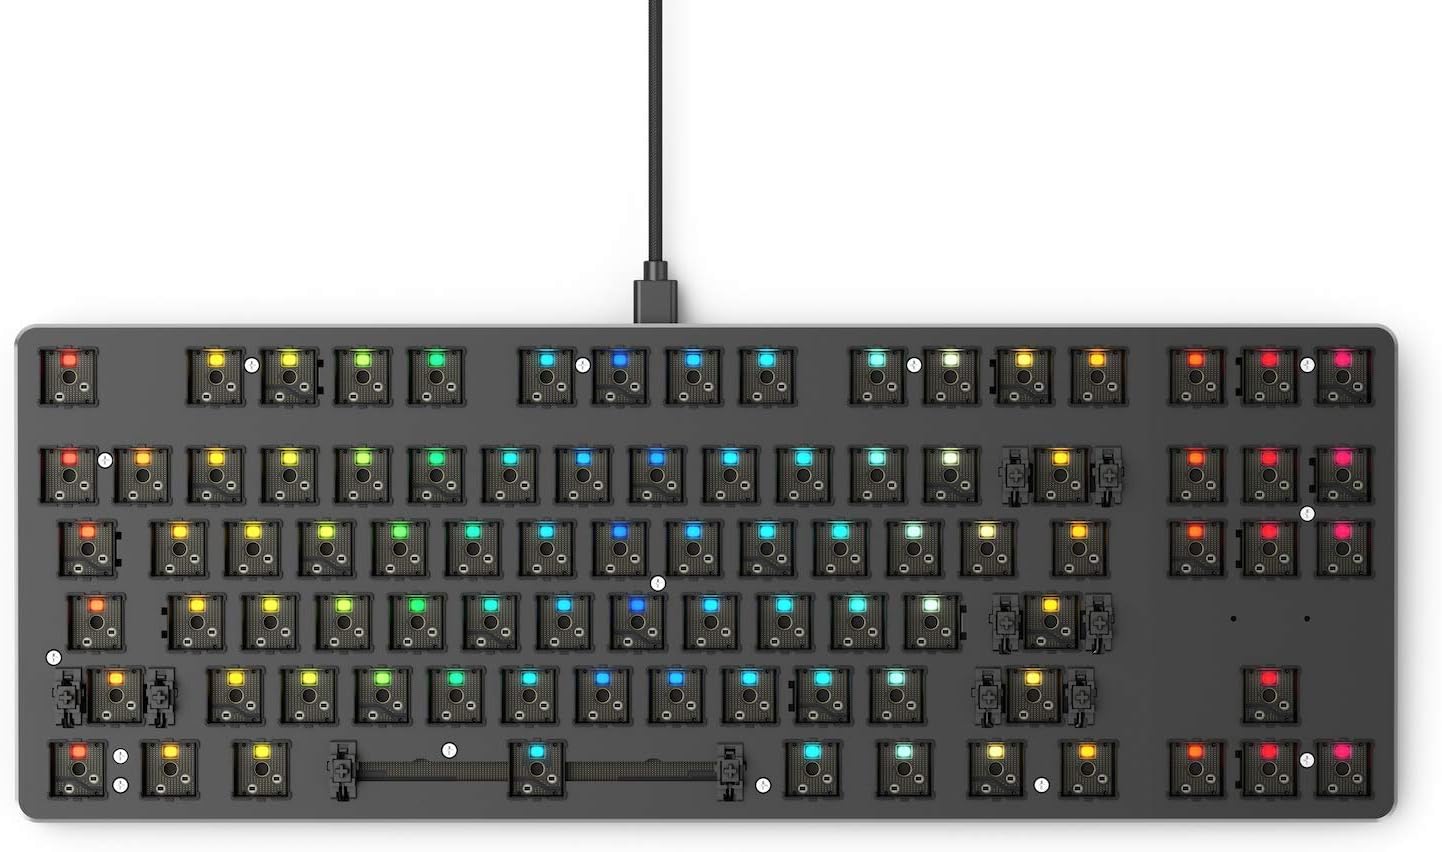 Glorious GMMK 85% TKL Custom Gaming Keyboard - Black Metal Top Plate, RGB LED Lighting 0857372006365